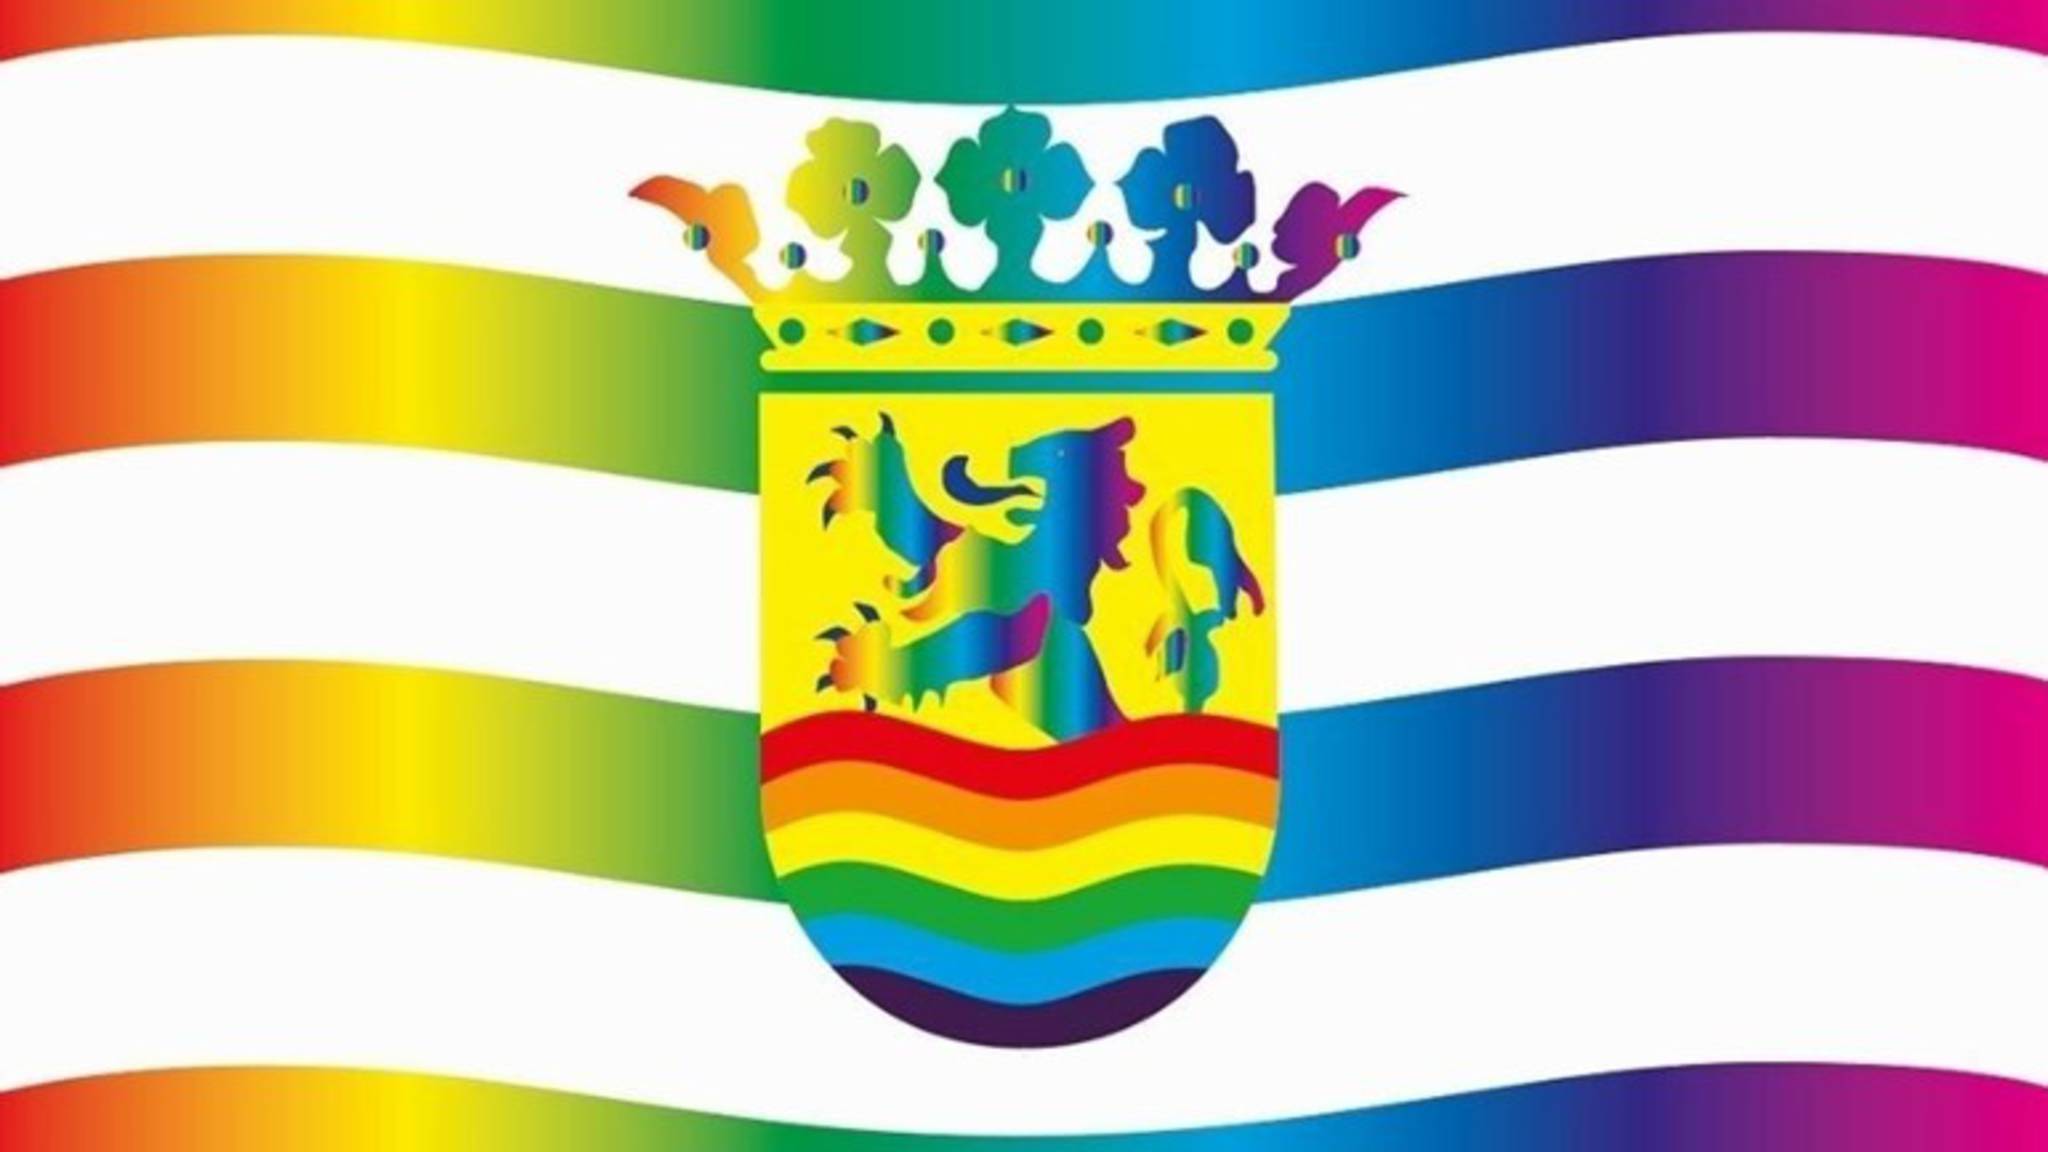 Zeeland rainbow flag design, by Vos Broekema